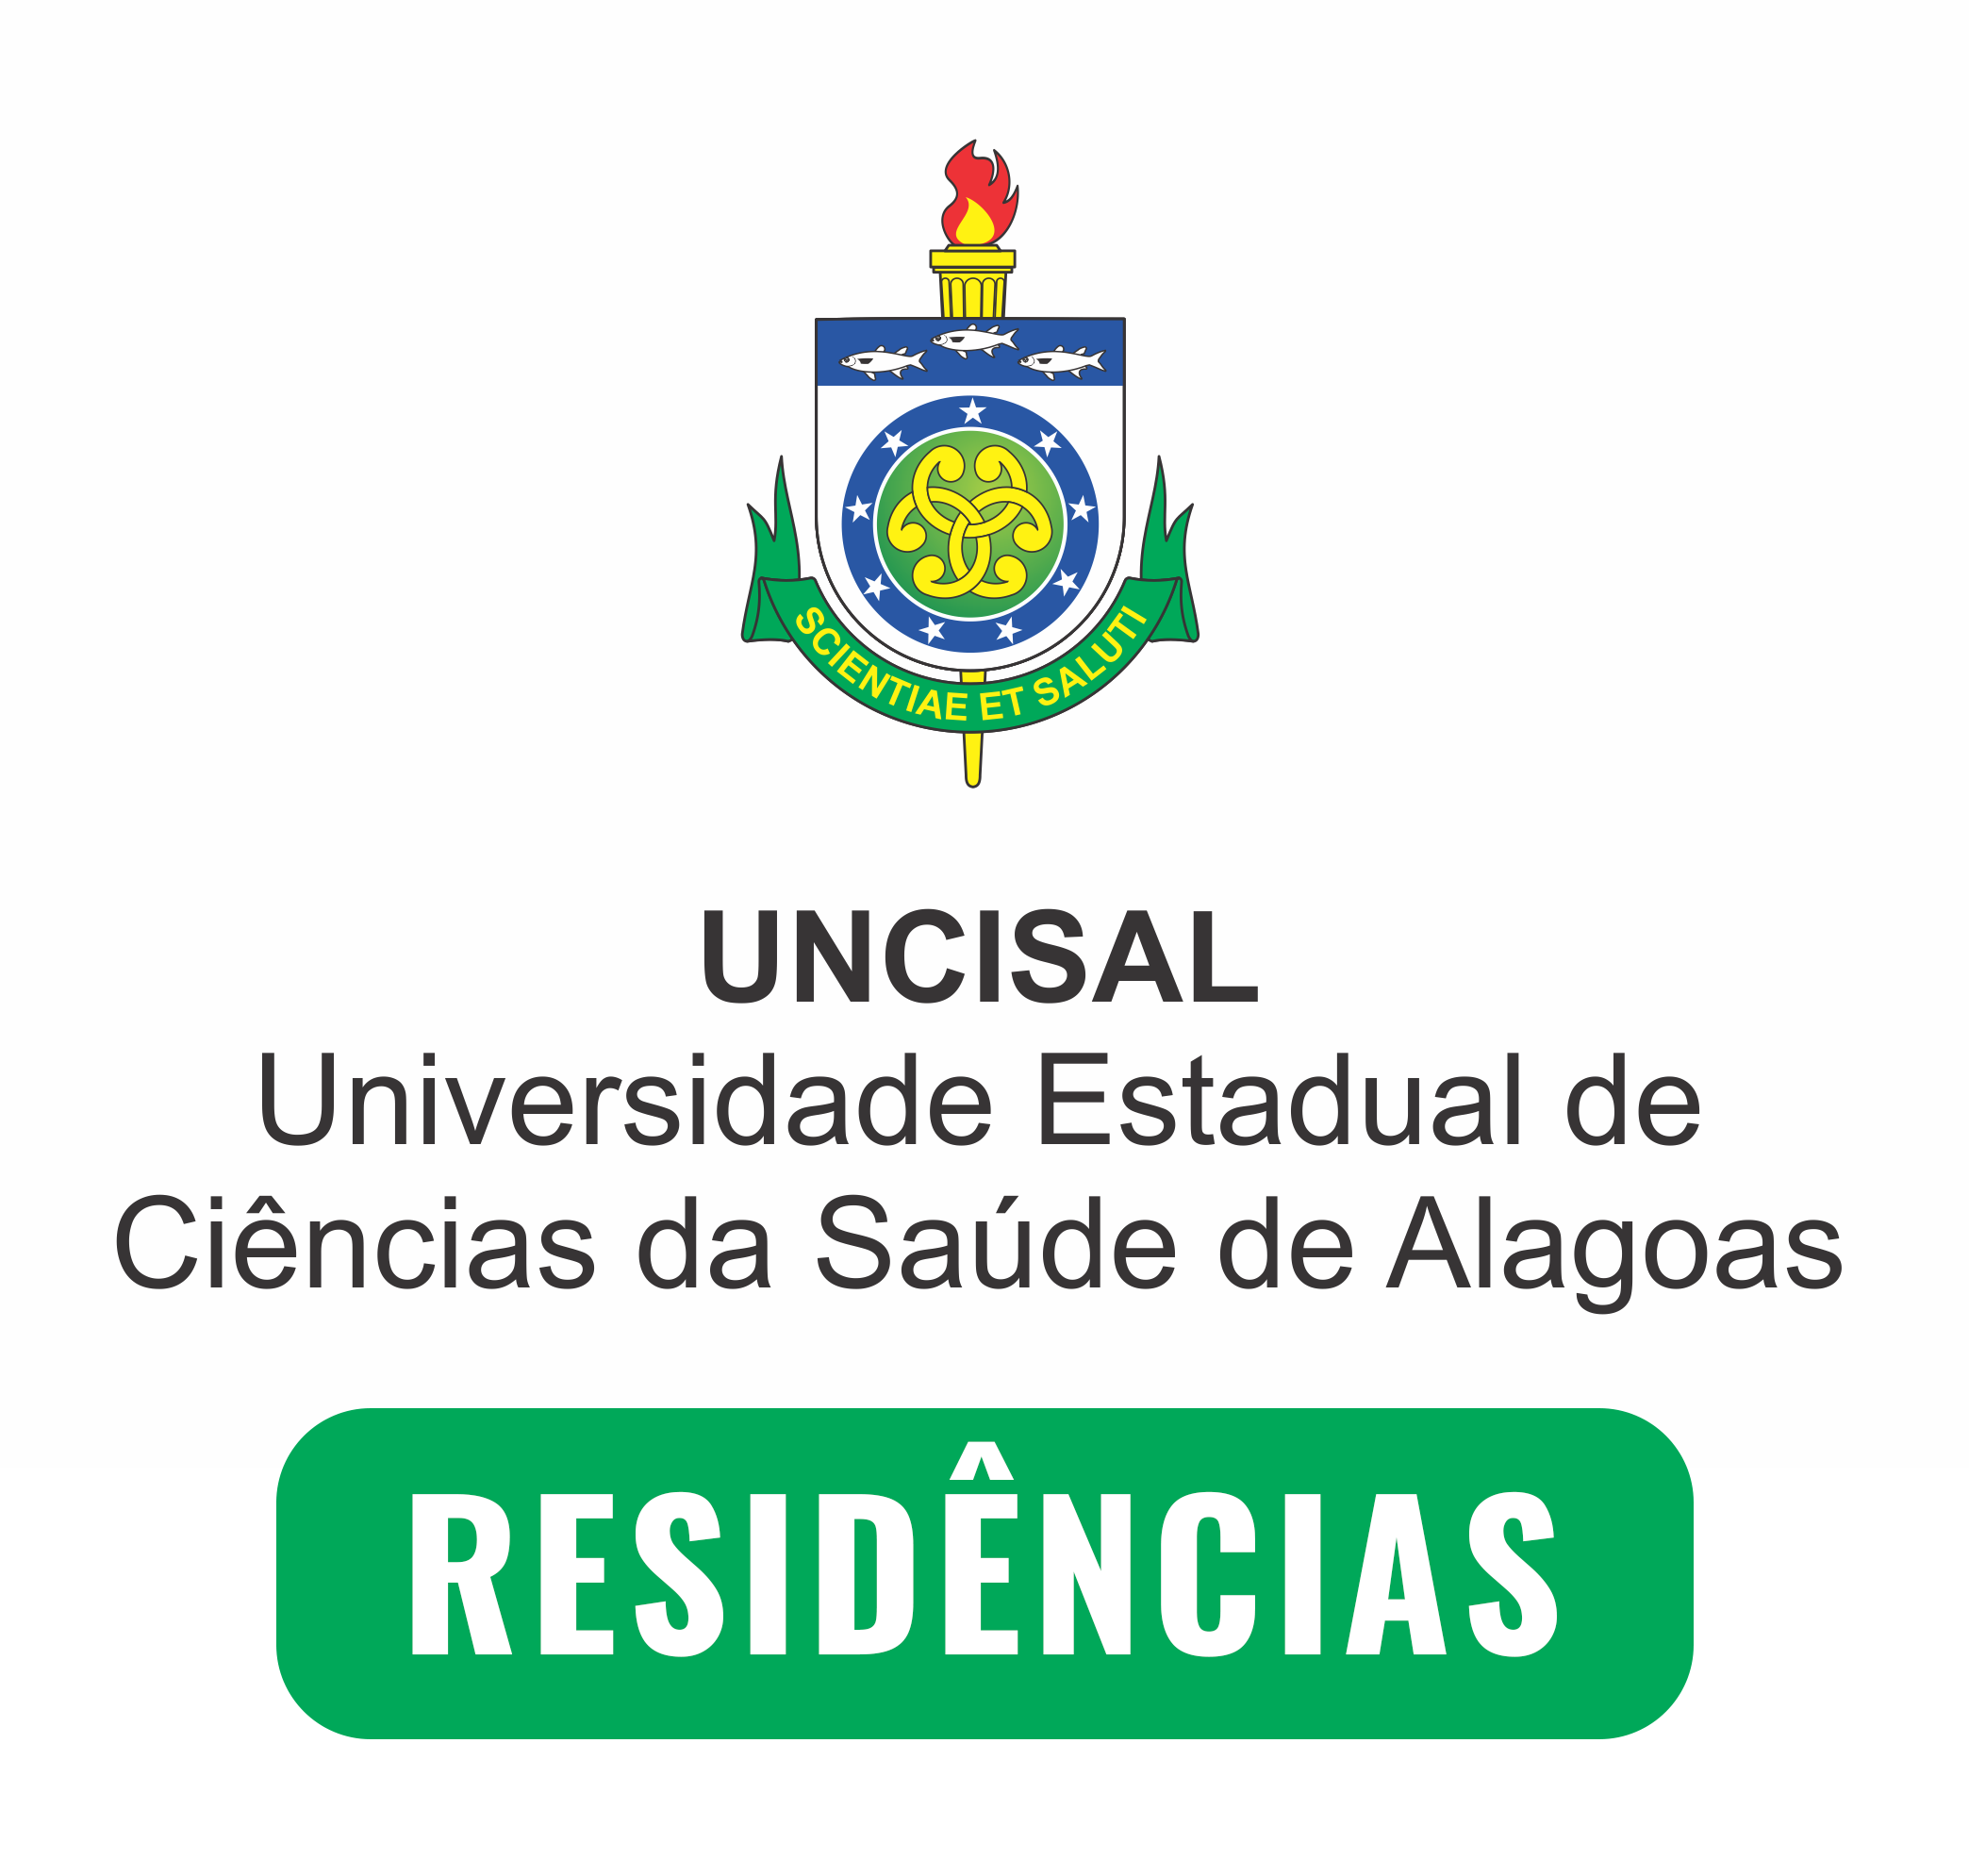 Universidade Estadual de Ciências da Saúde de Alagoas - UNCISAL